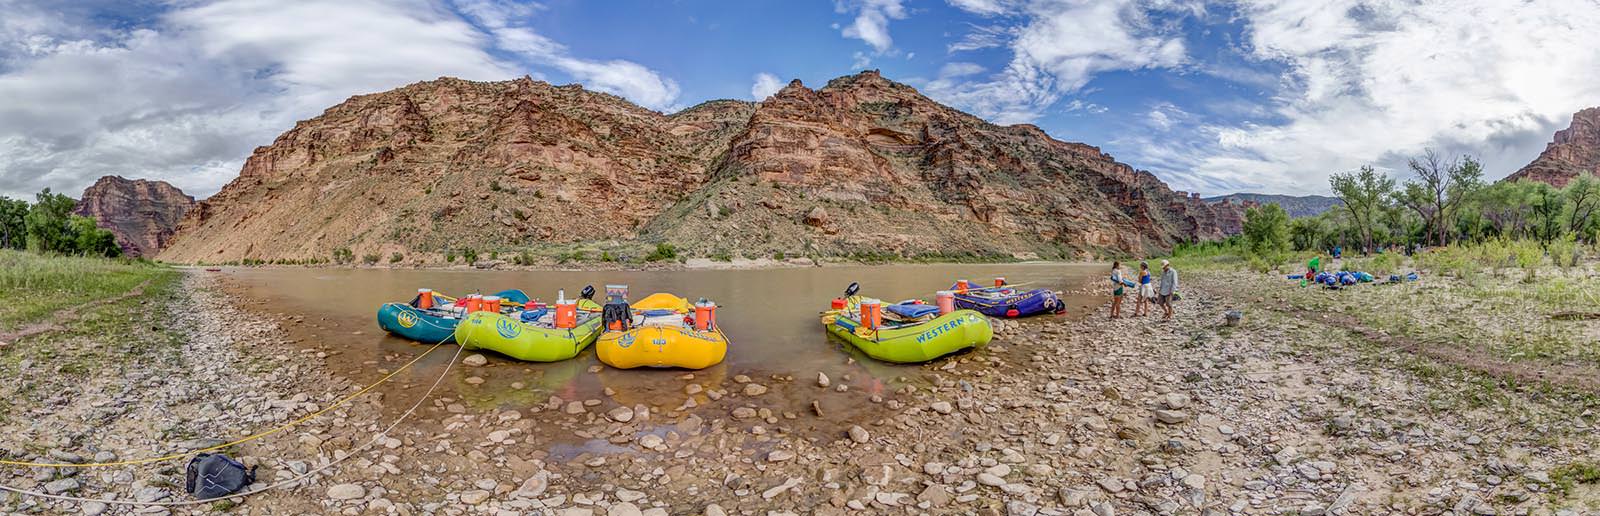 Desolation Canyon Utah Rafting Boats